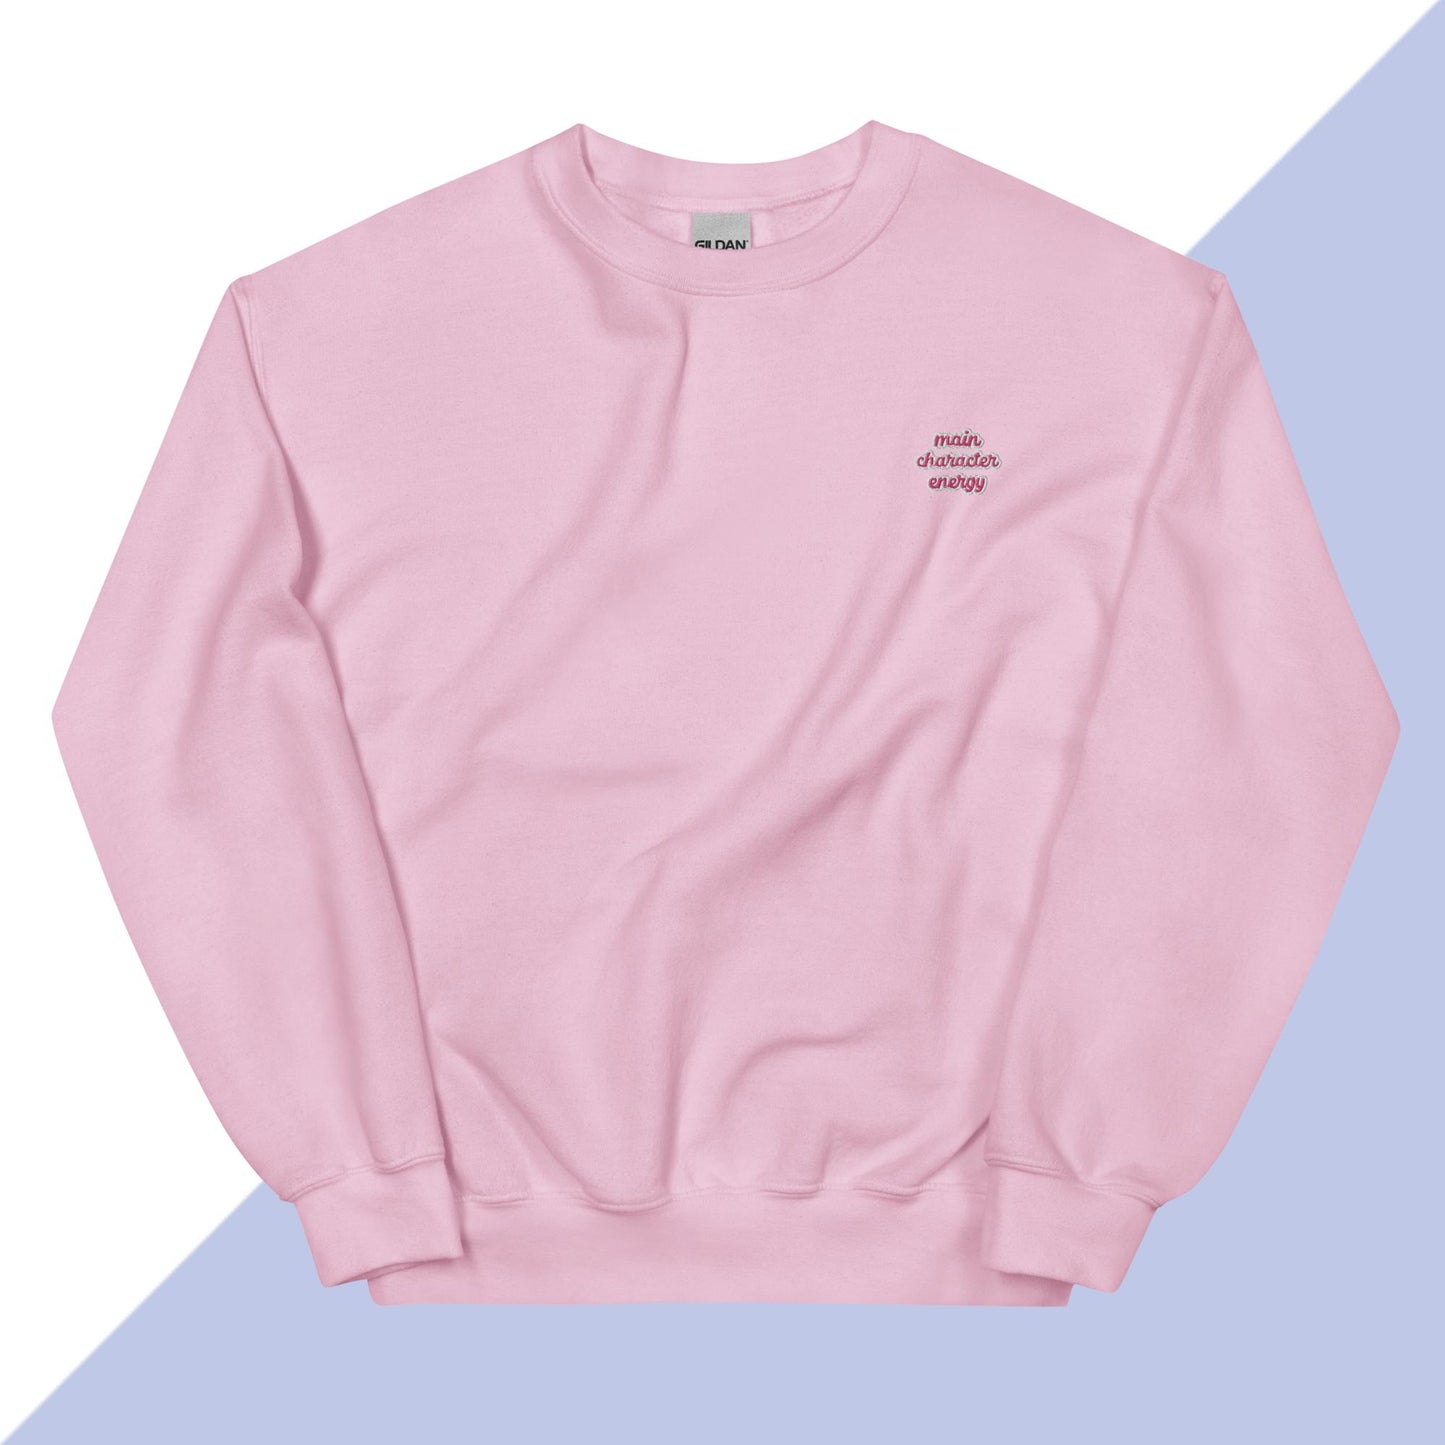 MAIN CHARACTER ENERGY - Embroidered Unisex Sweatshirt